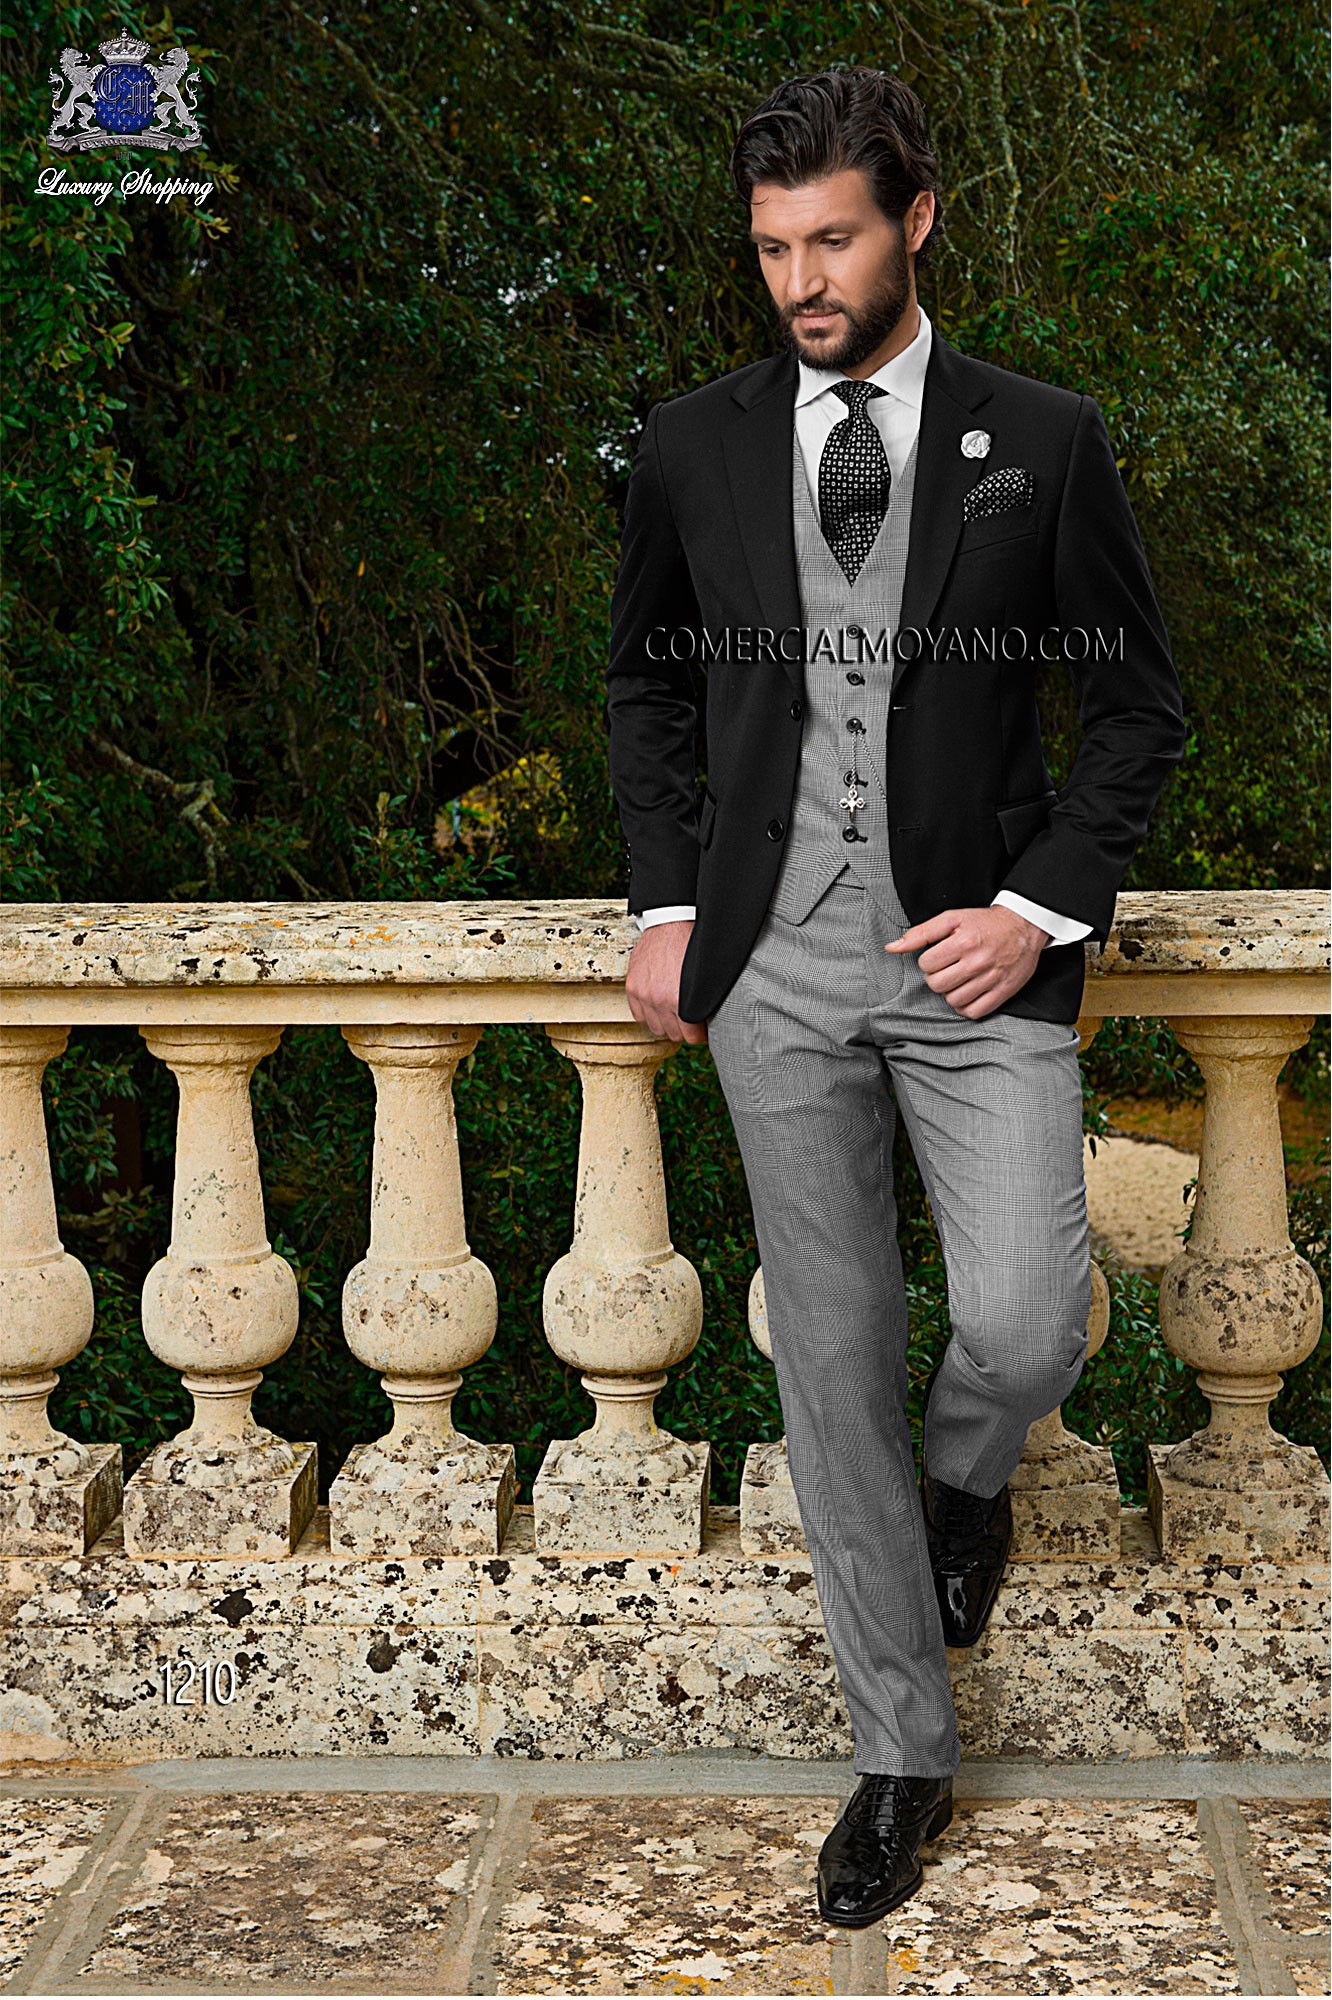 Traje de novio negro modelo: 1210 Mario Moyano colección Gentleman